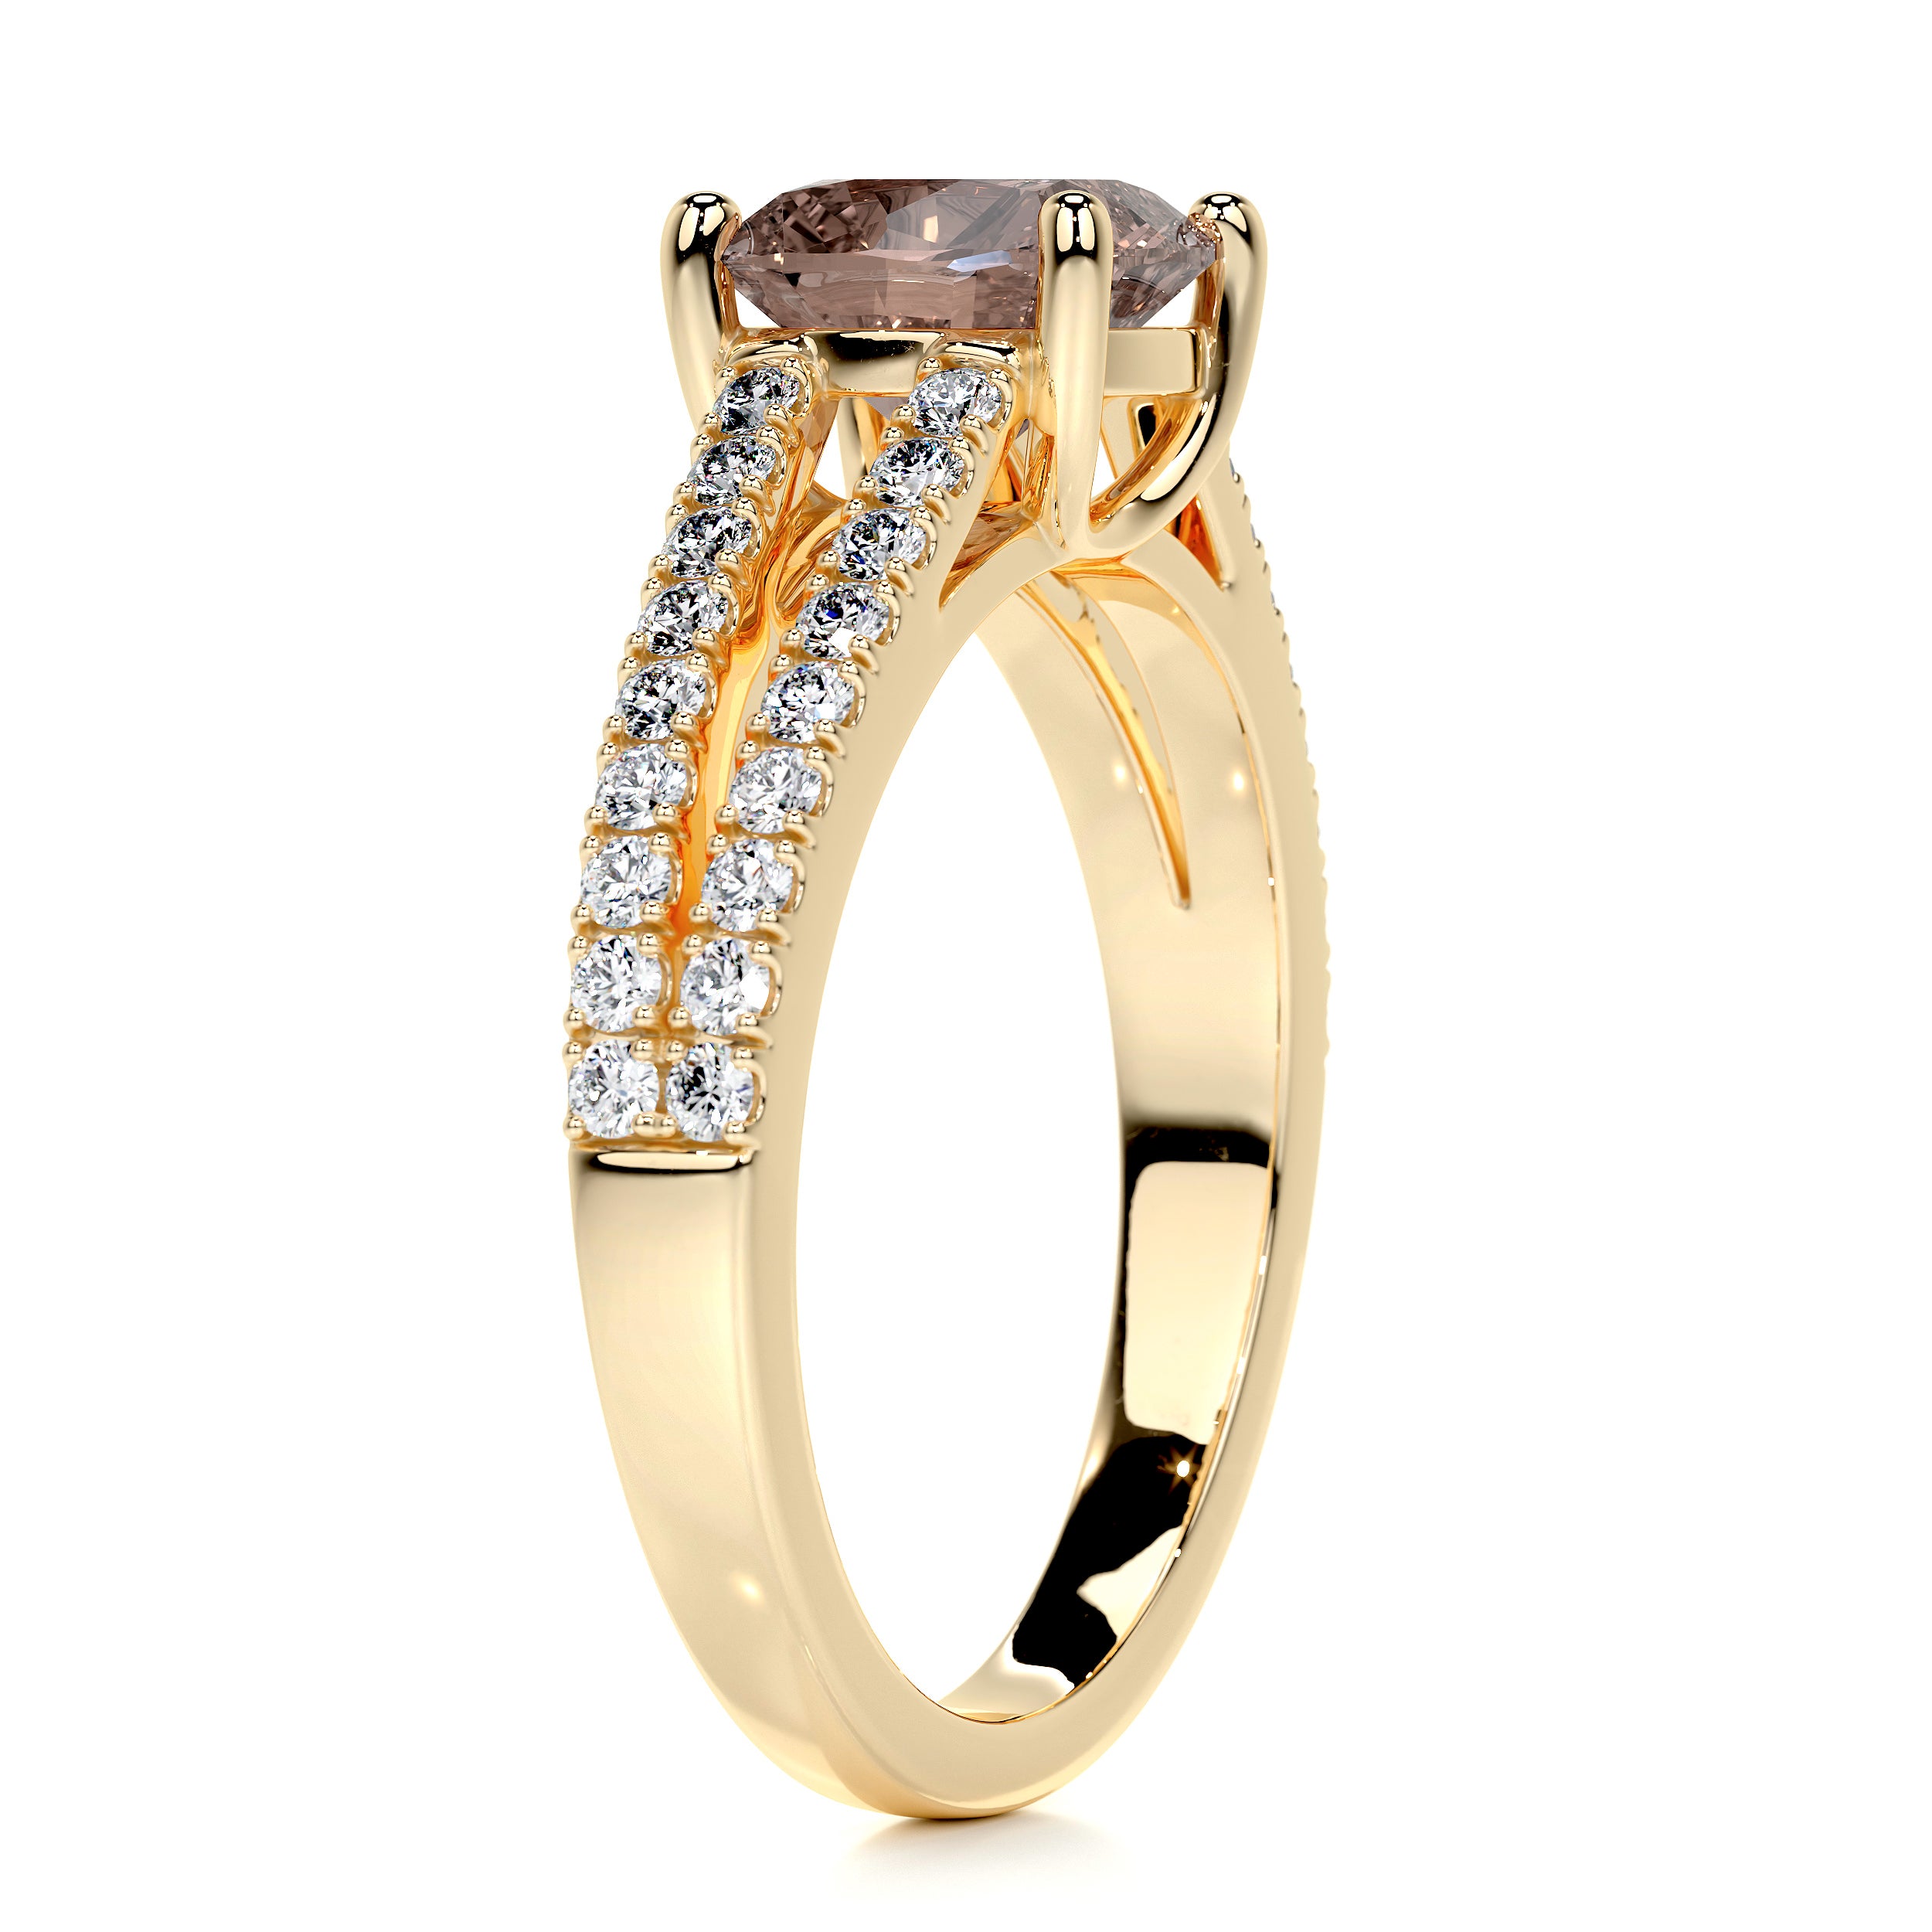 Sadie Gemstone & Diamonds Ring   (2 Carat) -18K Yellow Gold